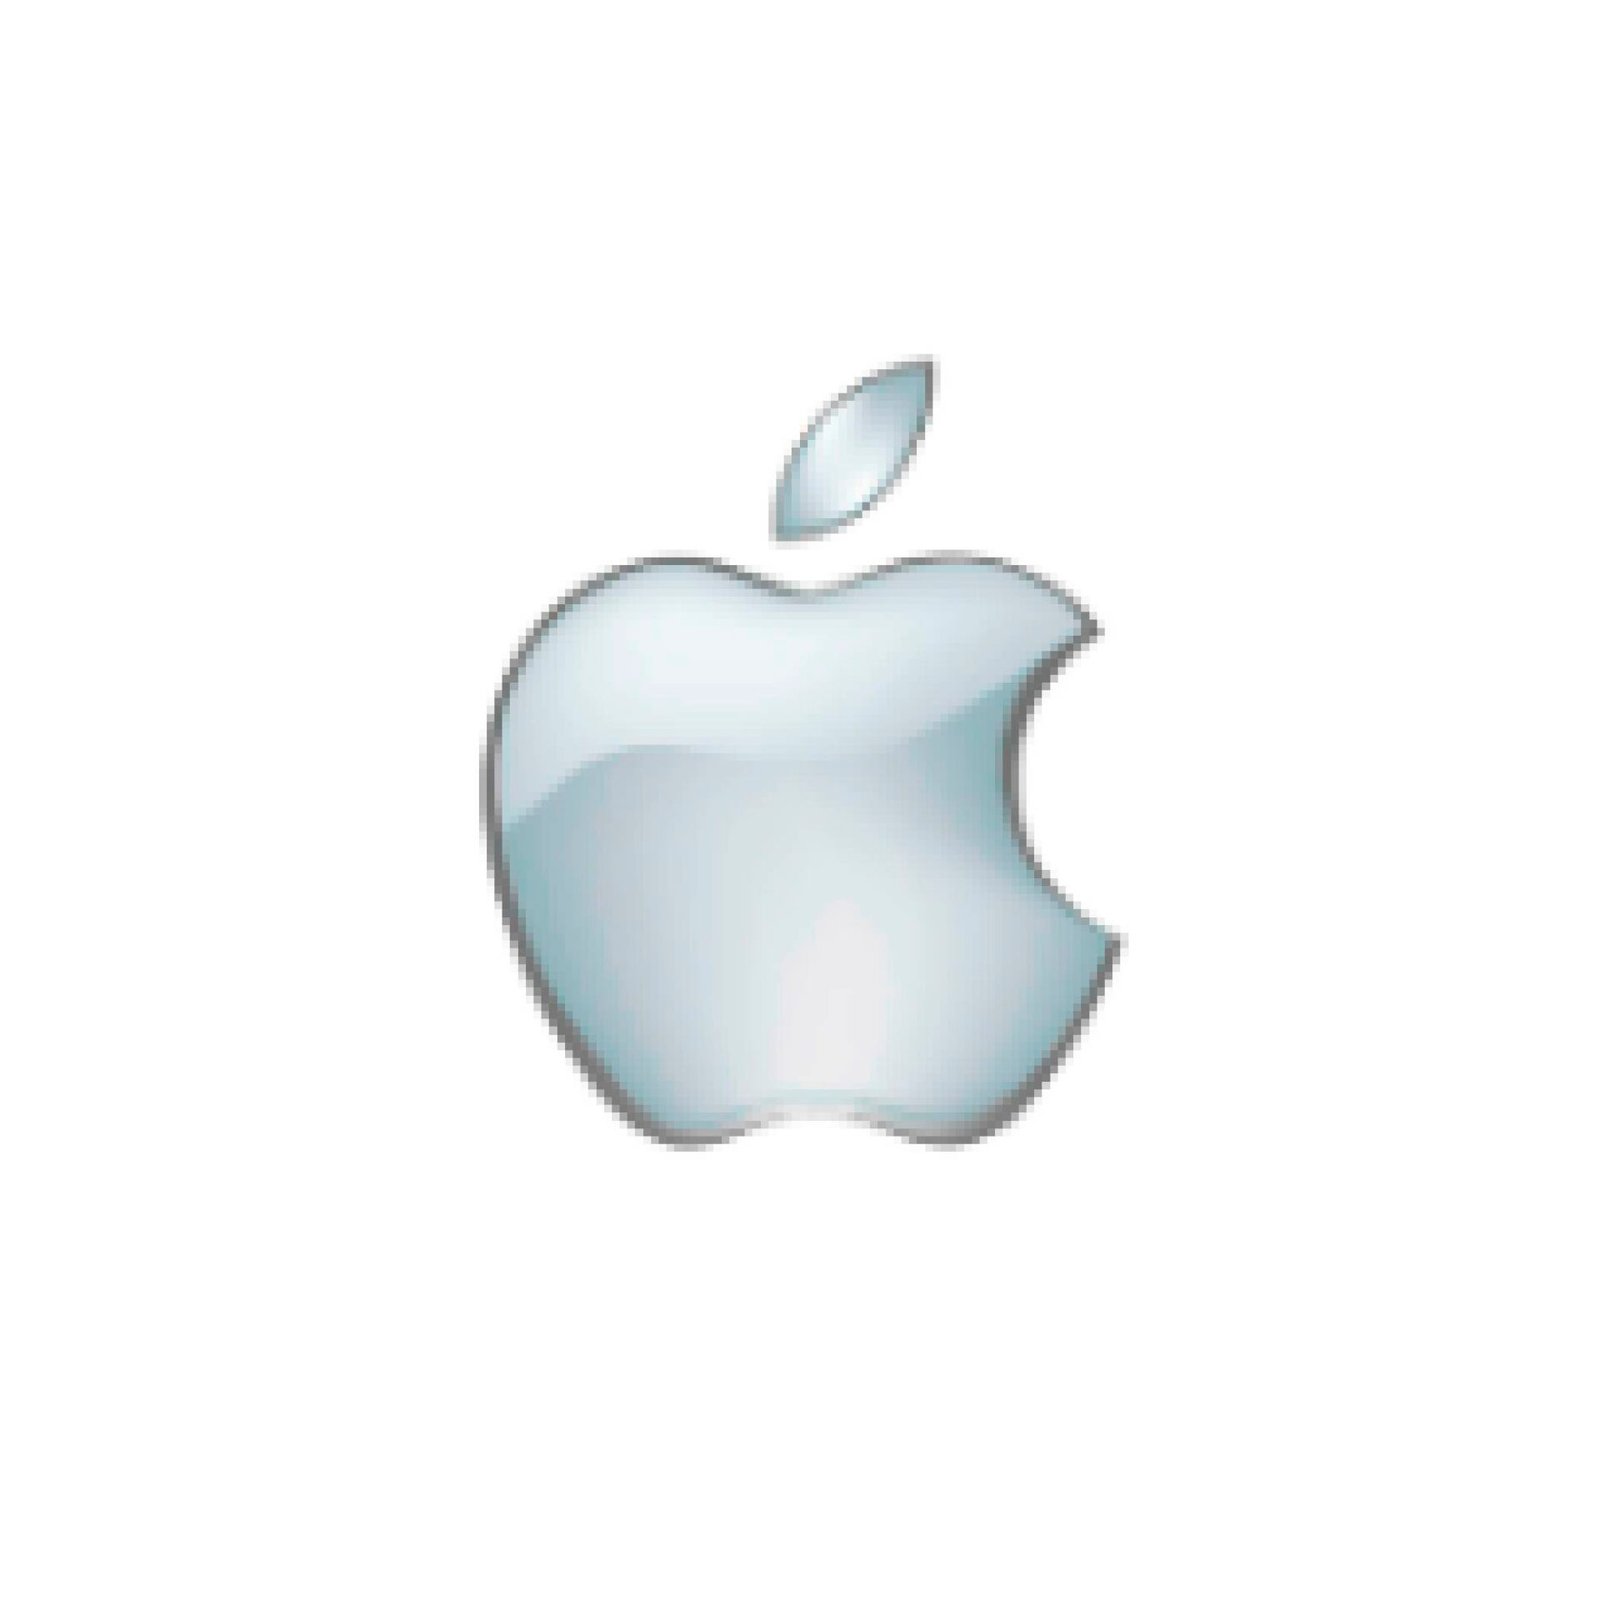 Dispositivo Apple MacBook Air con diseño innovador, sistema operativo intuitivo y tecnología de vanguardia, ofreciendo una experiencia de usuario única y eficiente.